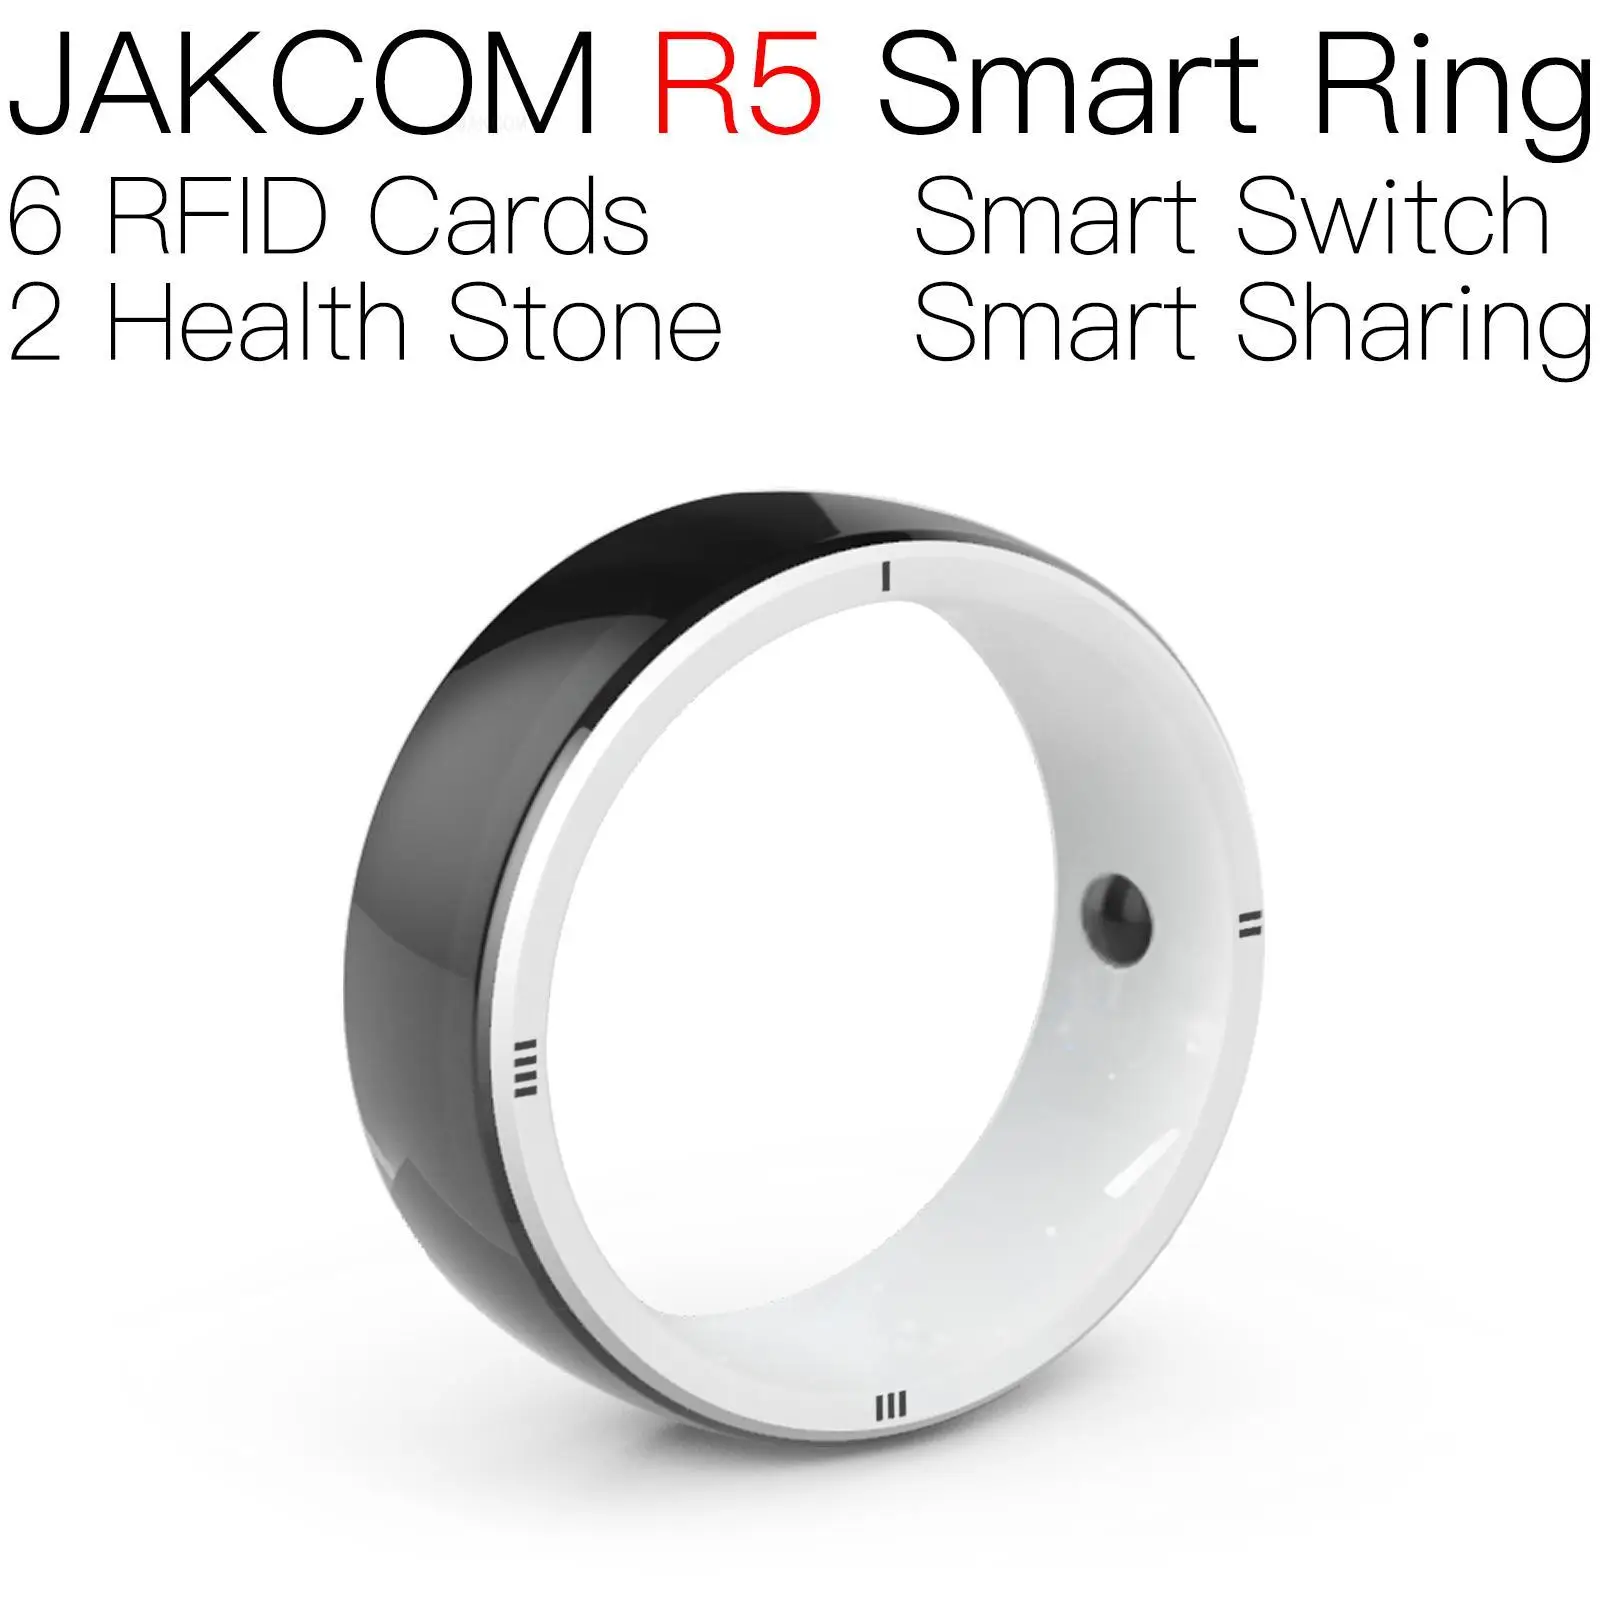 

Умное кольцо JAKCOM R5, лучший подарок с часами серии 7, 6 дюймов, романтичная кукла, 15 дней доставки, умный zigbee gateway i